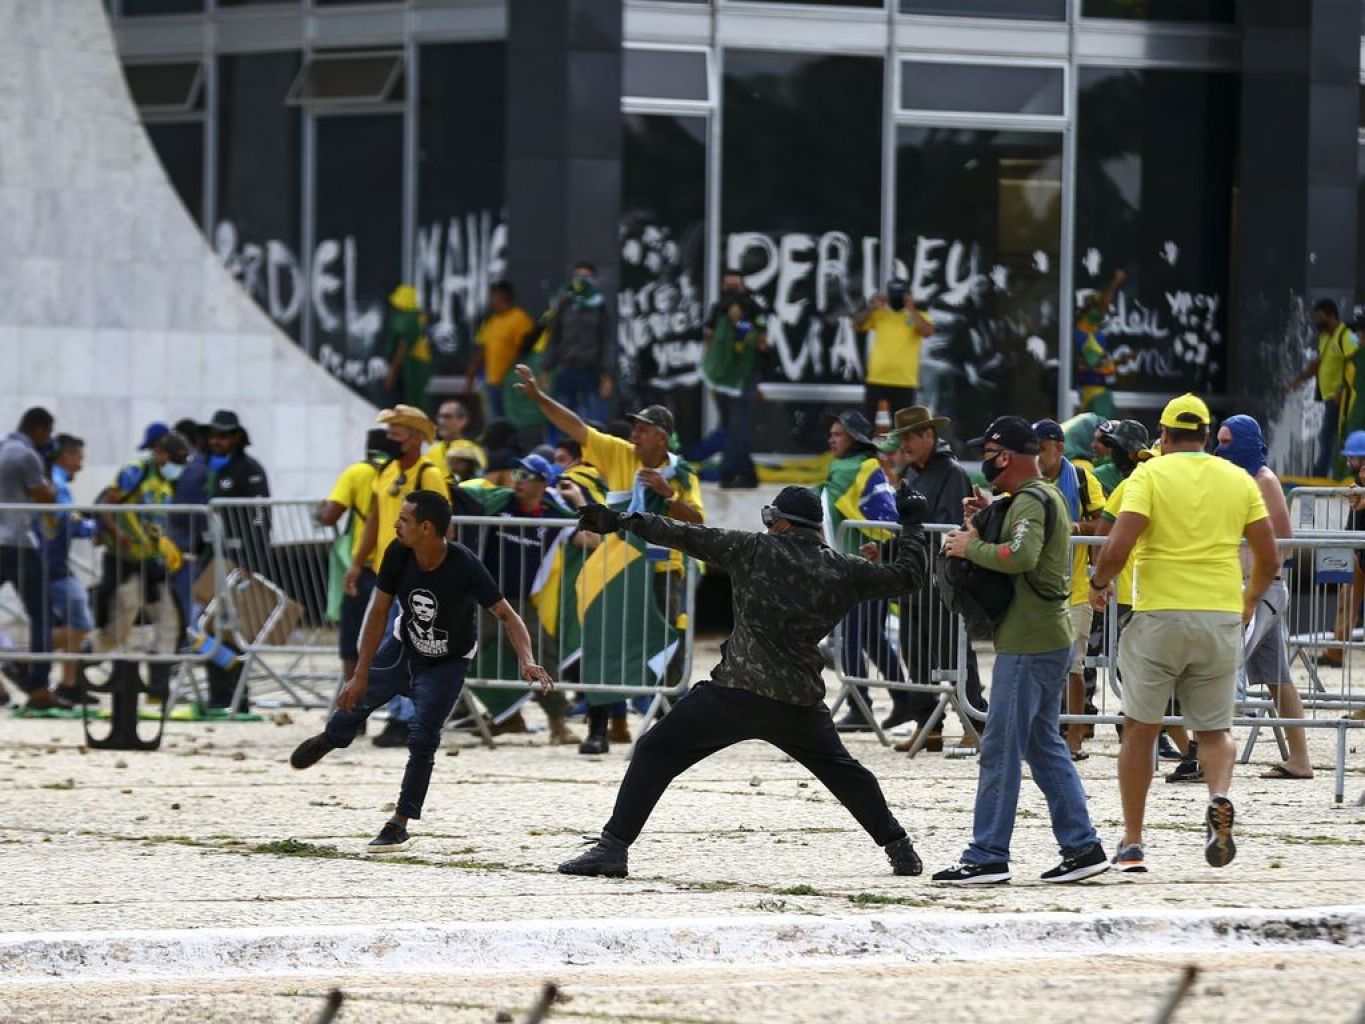 Após um mês, punição a golpistas é insuficiente. É preciso chegar em Bolsonaro!